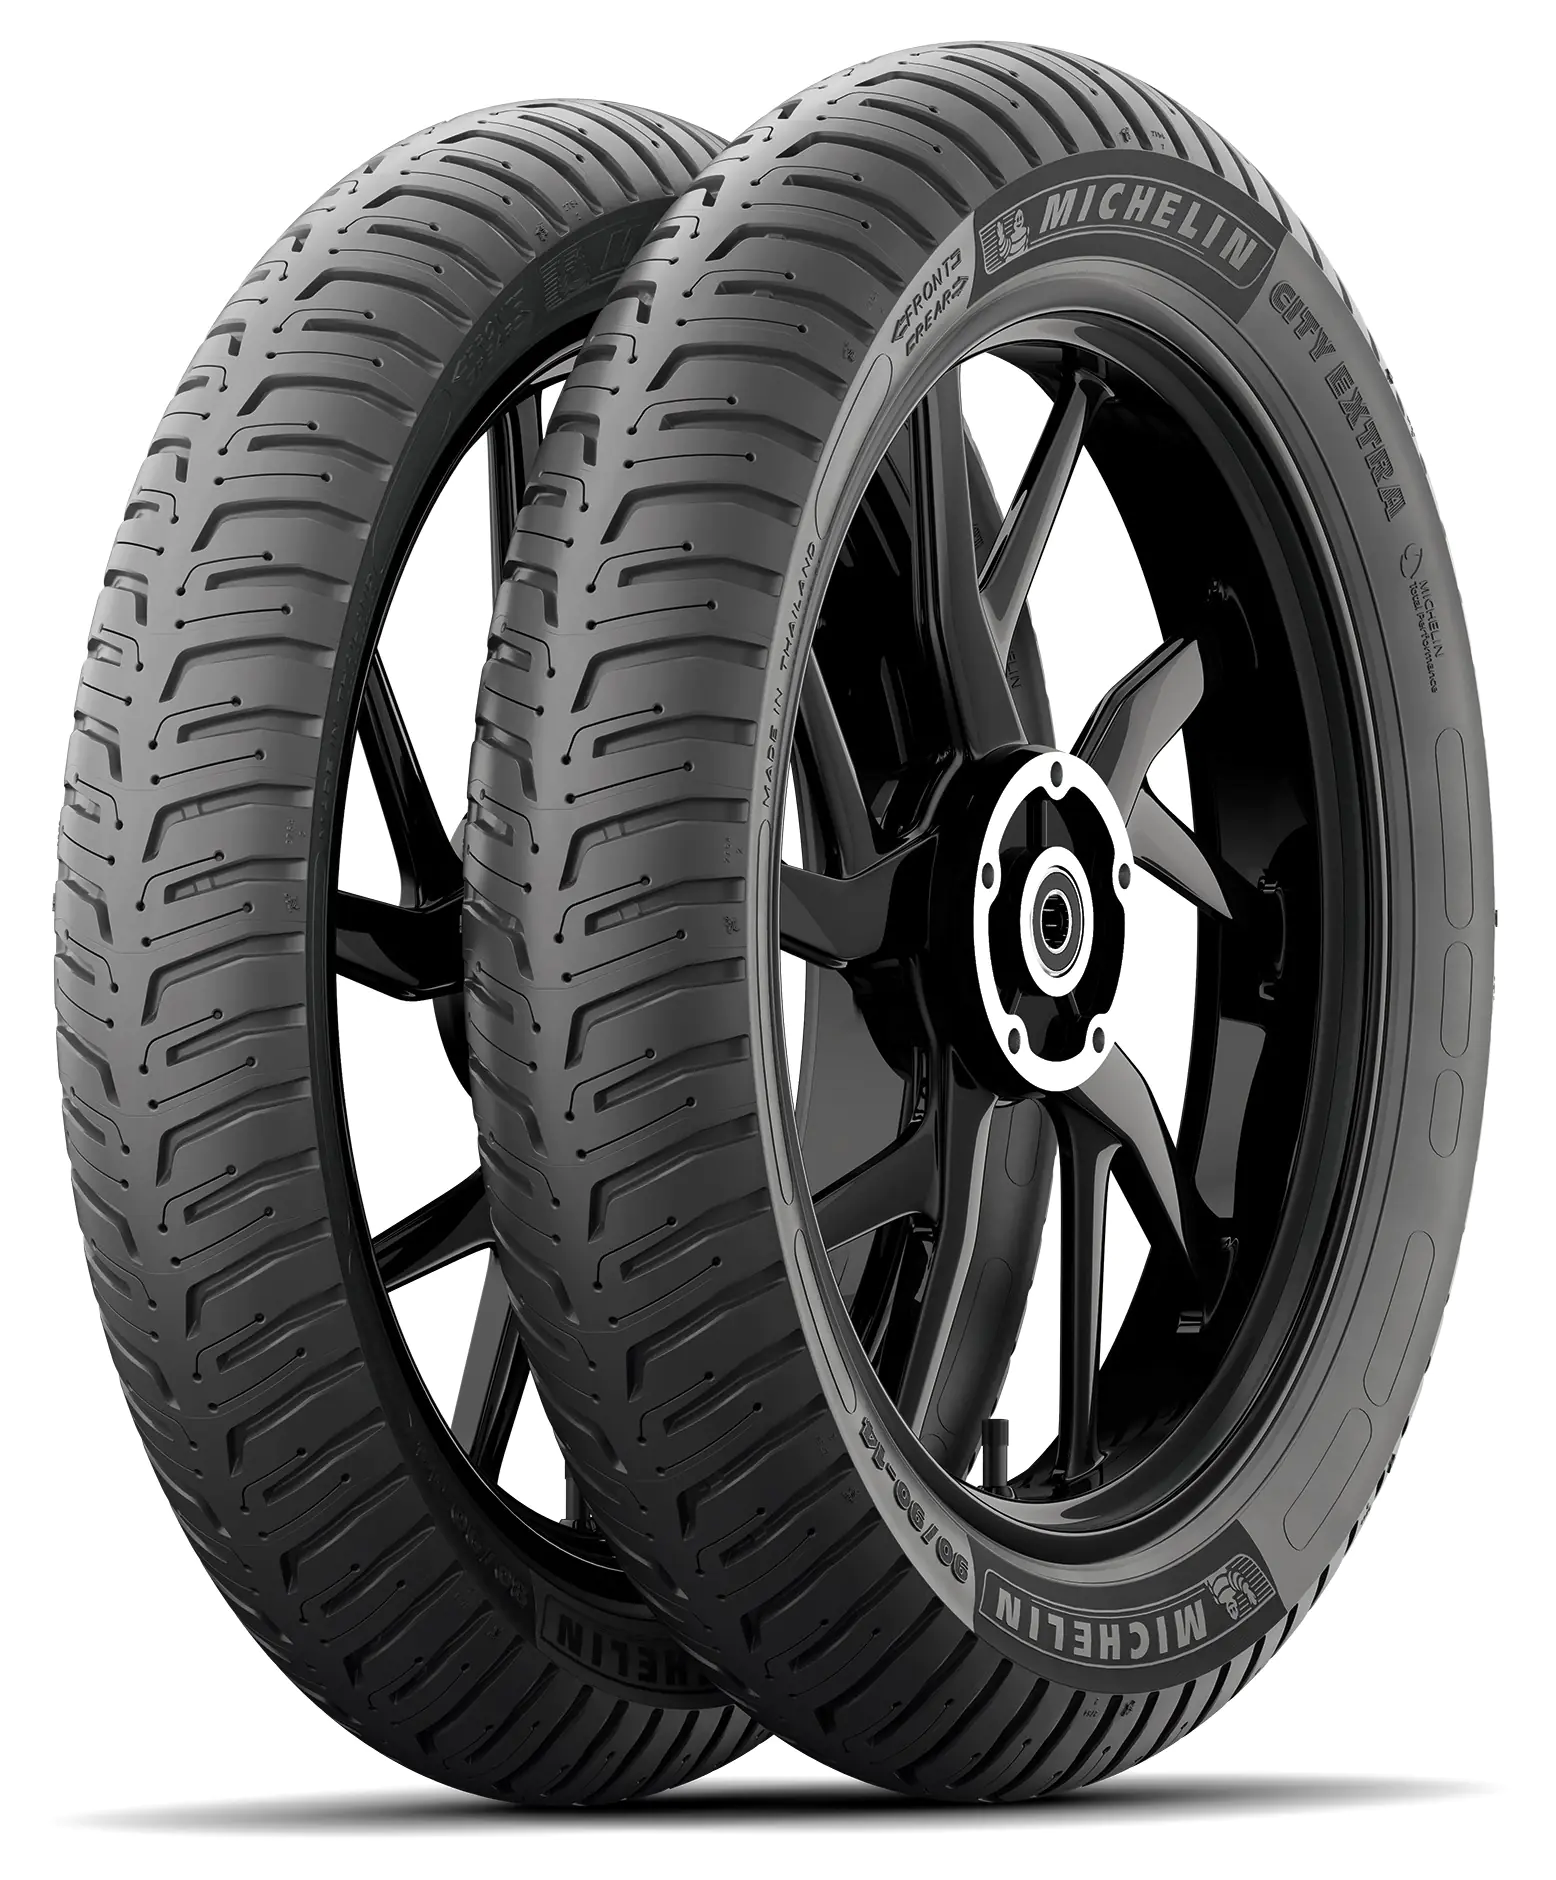 Michelin Michelin 120/80 R16 60S CITY EXTRA pneumatici nuovi Estivo 